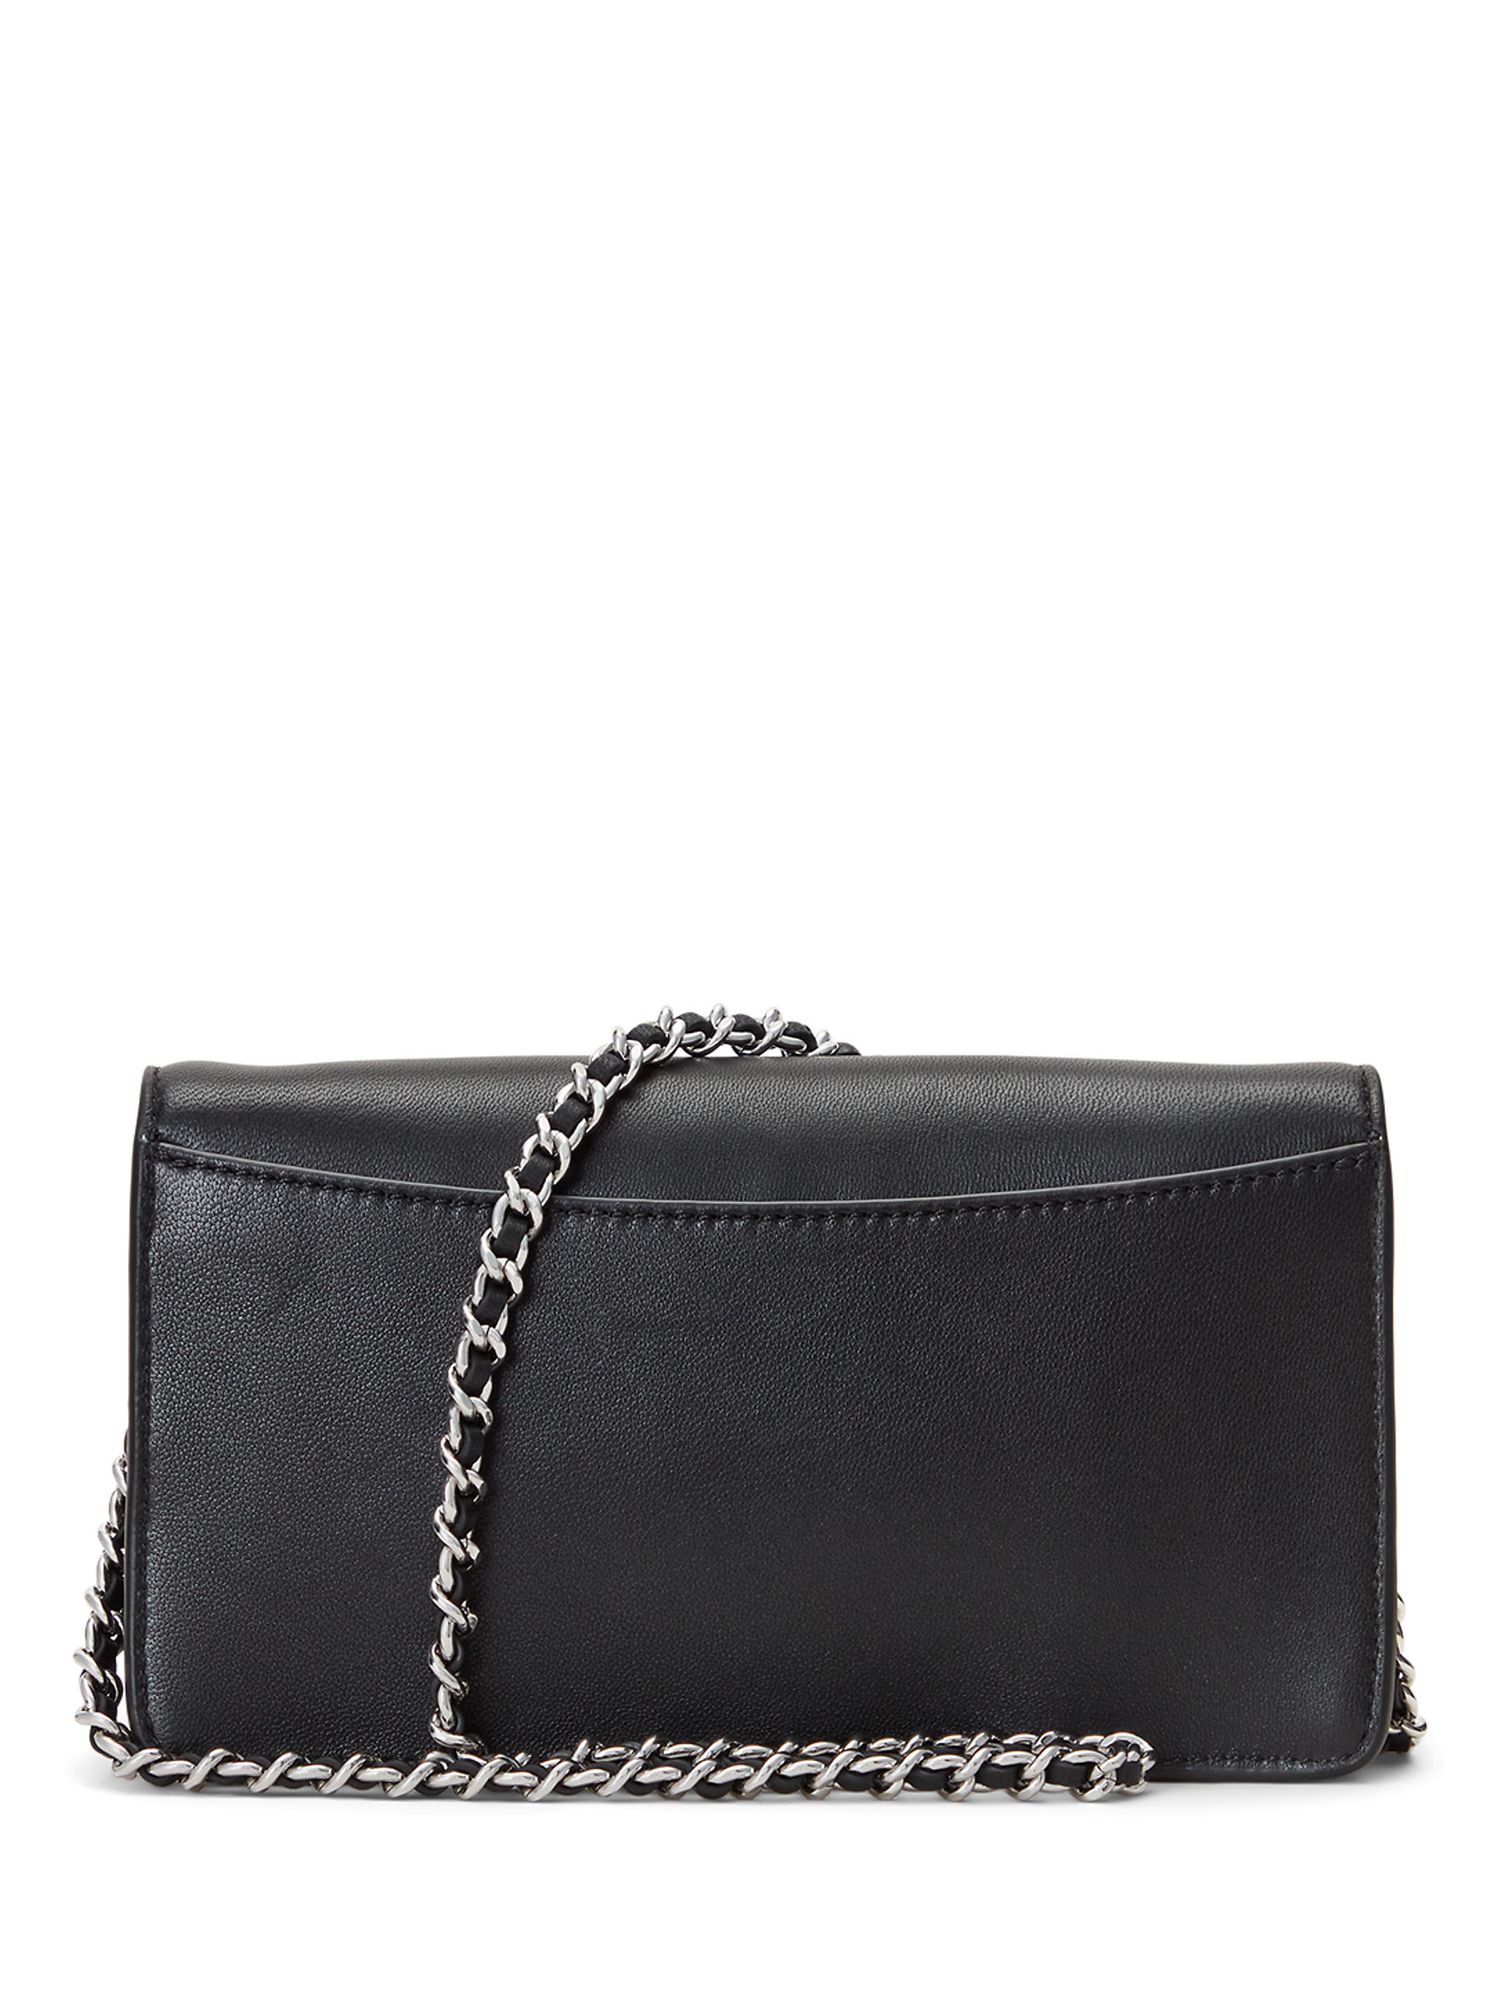 Buy Lauren Ralph Lauren Tech Leather Chain Strap Cross Body Bag Online at johnlewis.com